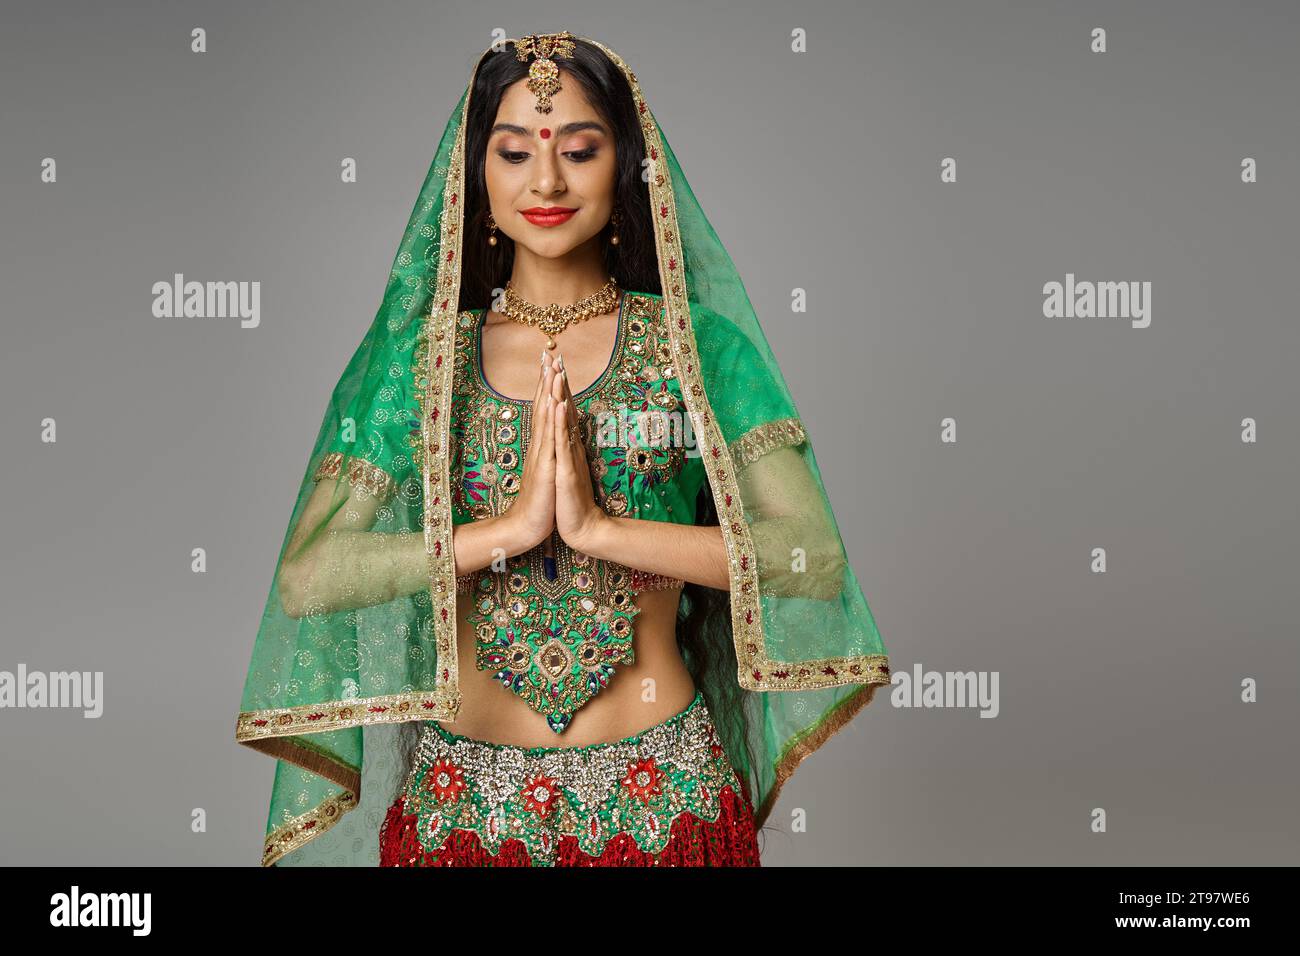 joyeuse jeune femme indienne en costume traditionnel avec voile et bindi priant et regardant vers le bas Banque D'Images